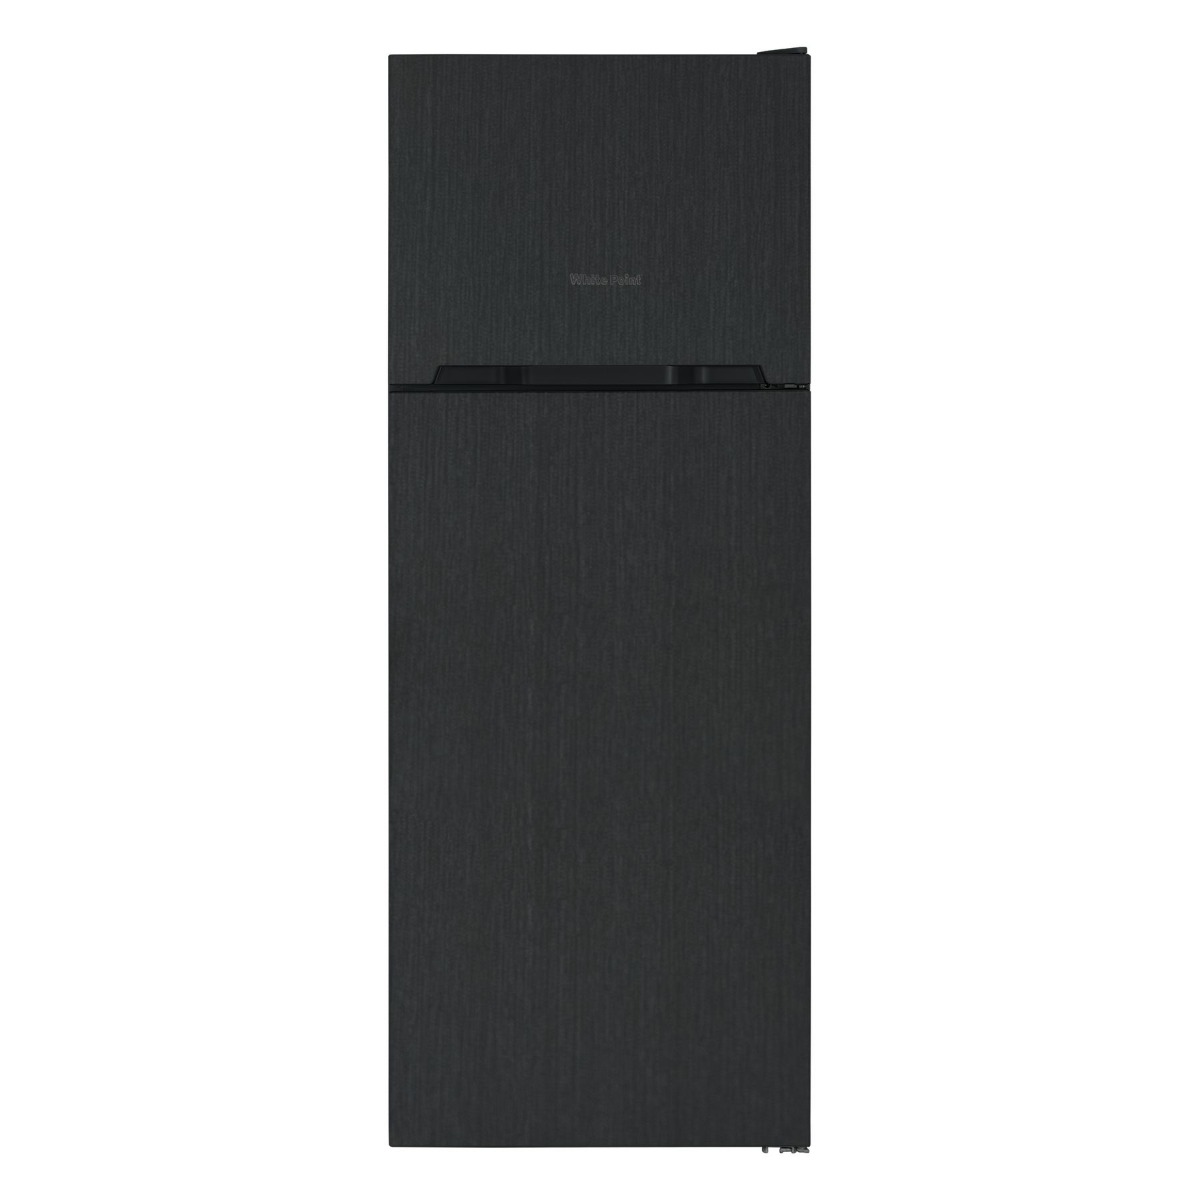 White Point No-Frost Freestabding Refrigerator, 420 Liters, Black- WPR463B